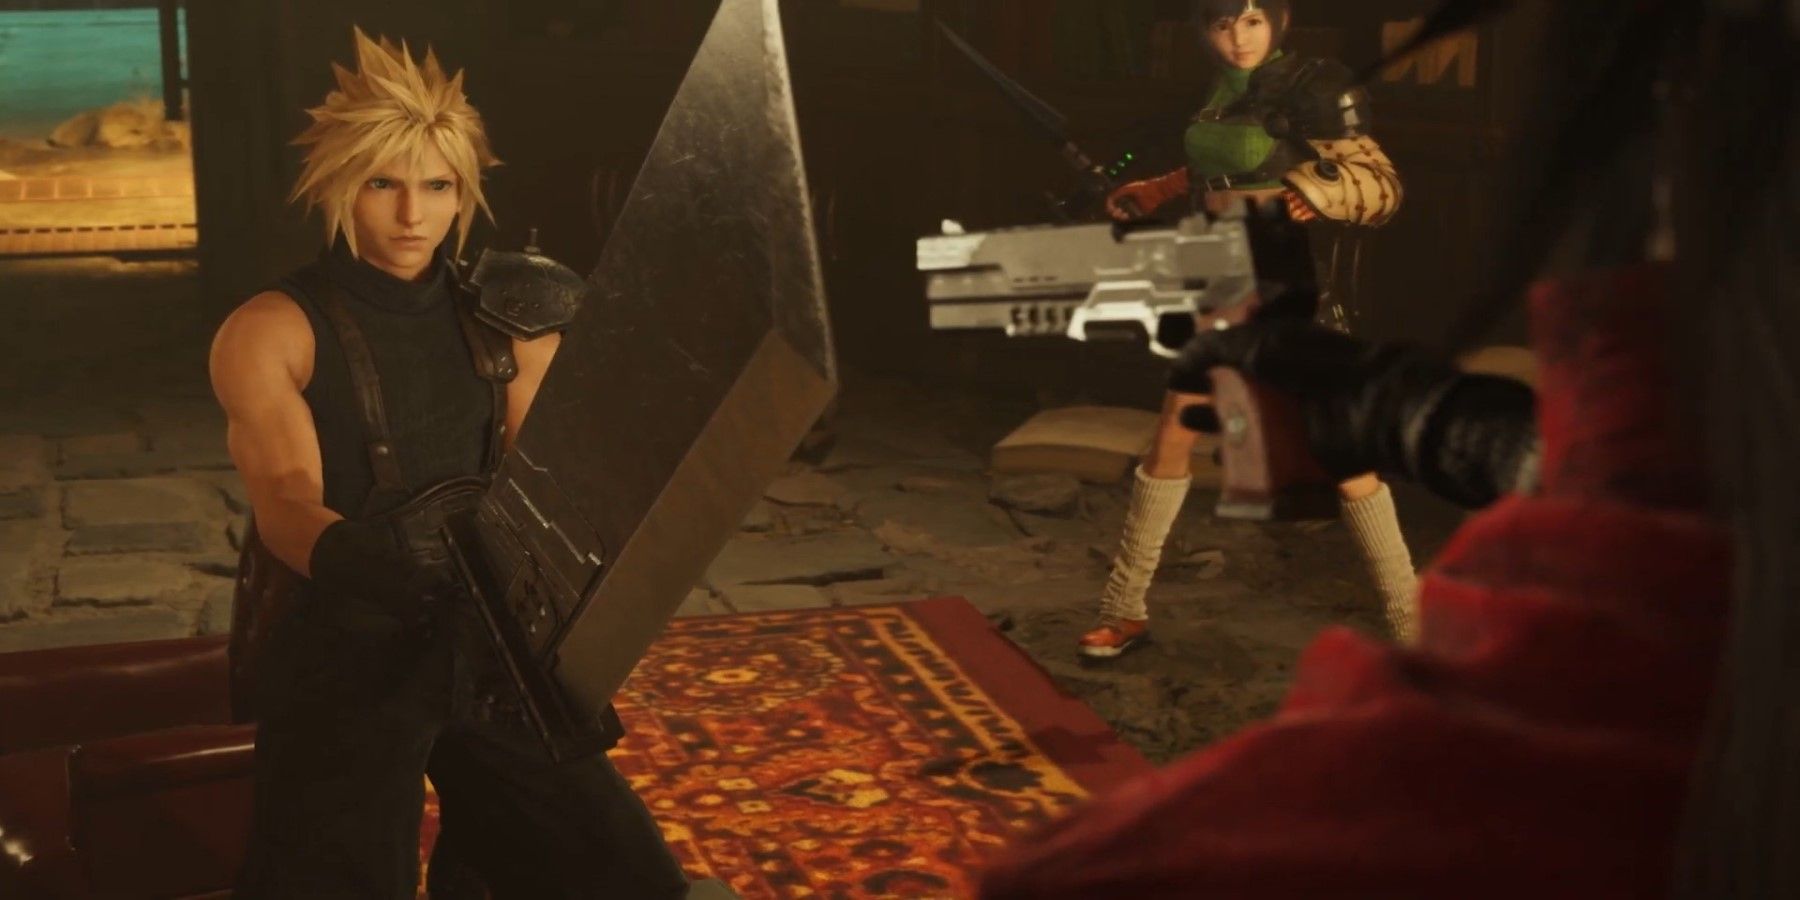 Final Fantasy 7 Rebirth: Release Date, Trailer and Developer